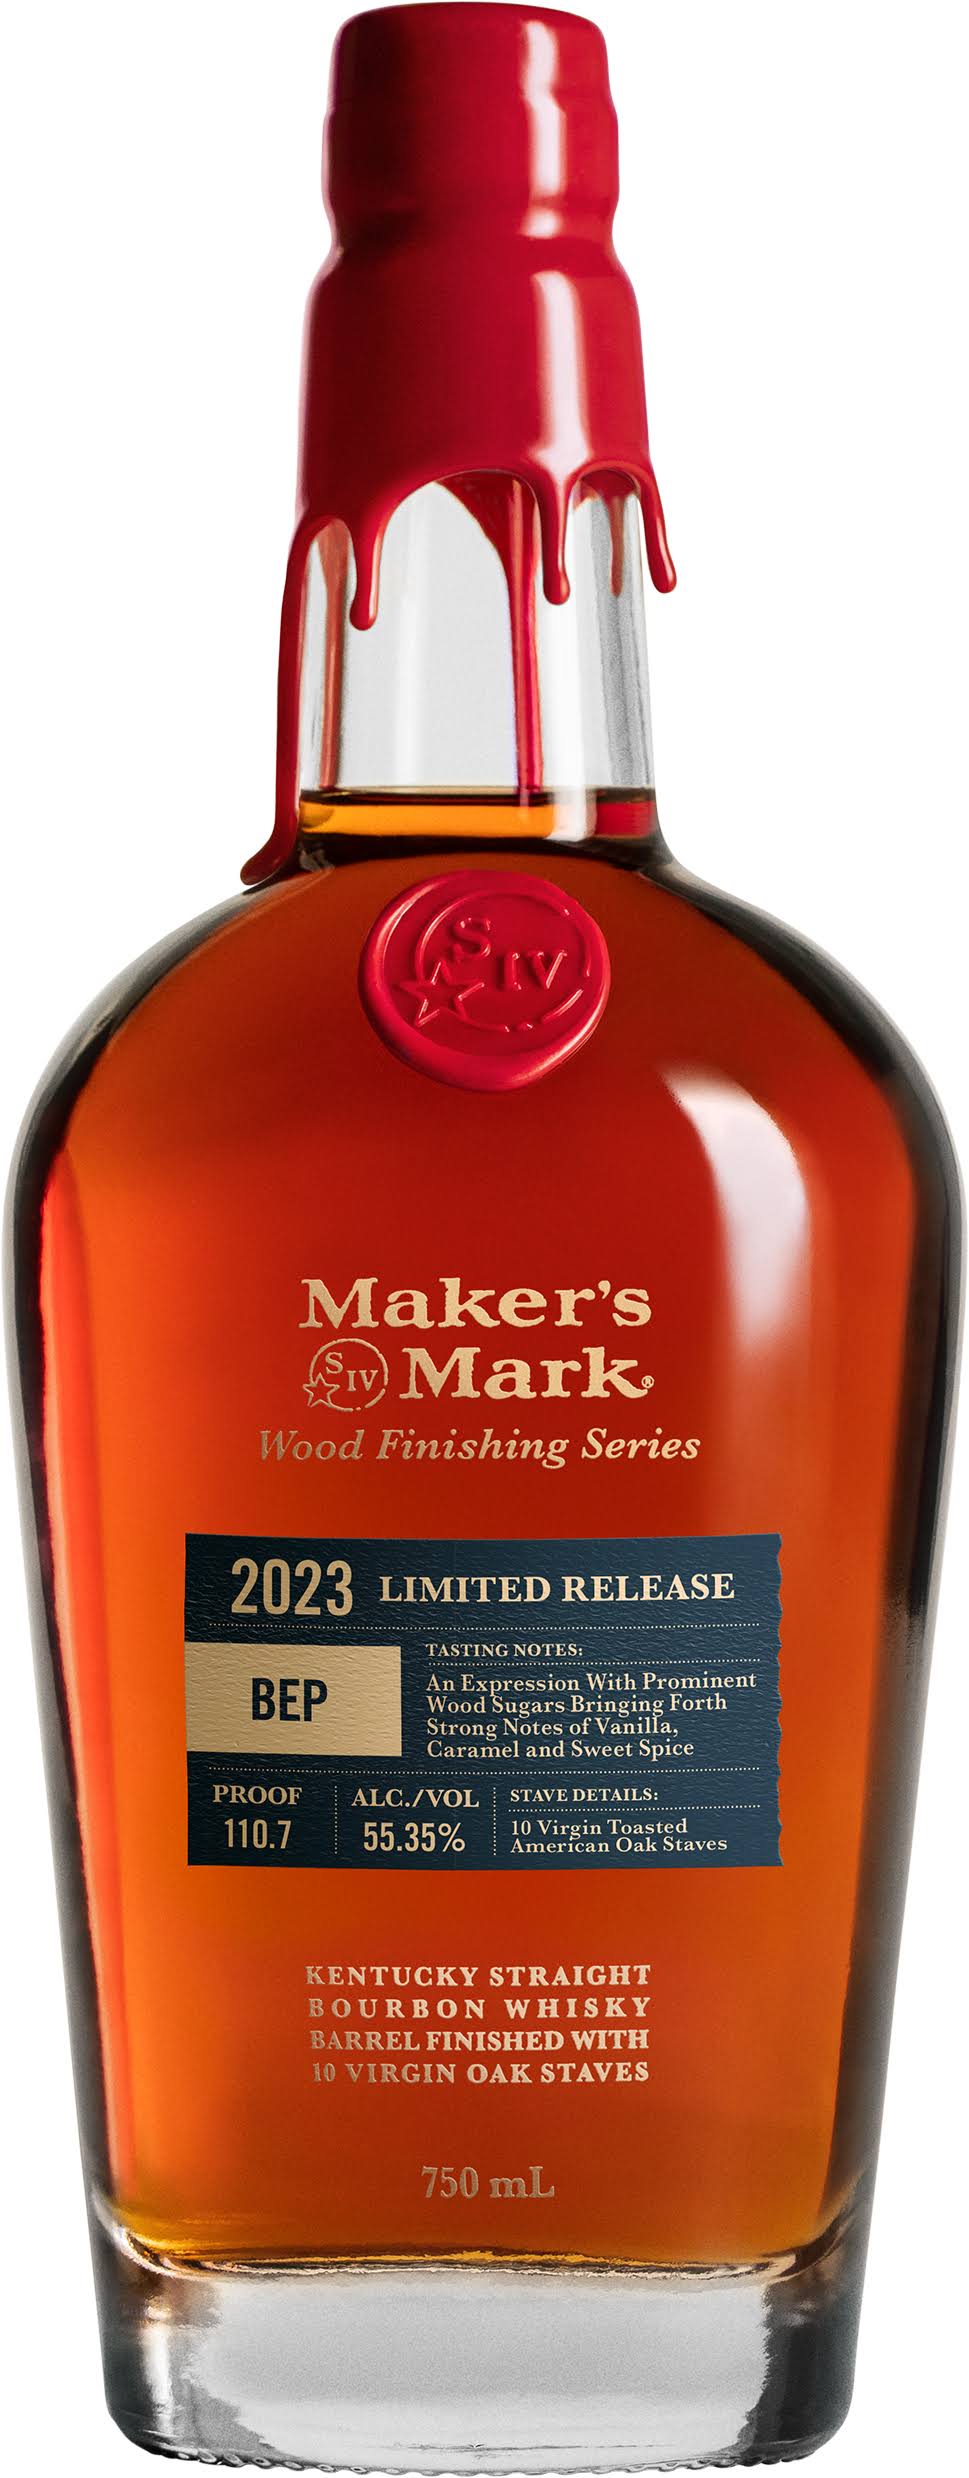 Maker's Mark BEP Wood Finishing Series Limited Release Kentucky Straight Bourbon Whisky 2023 750ml Bottle